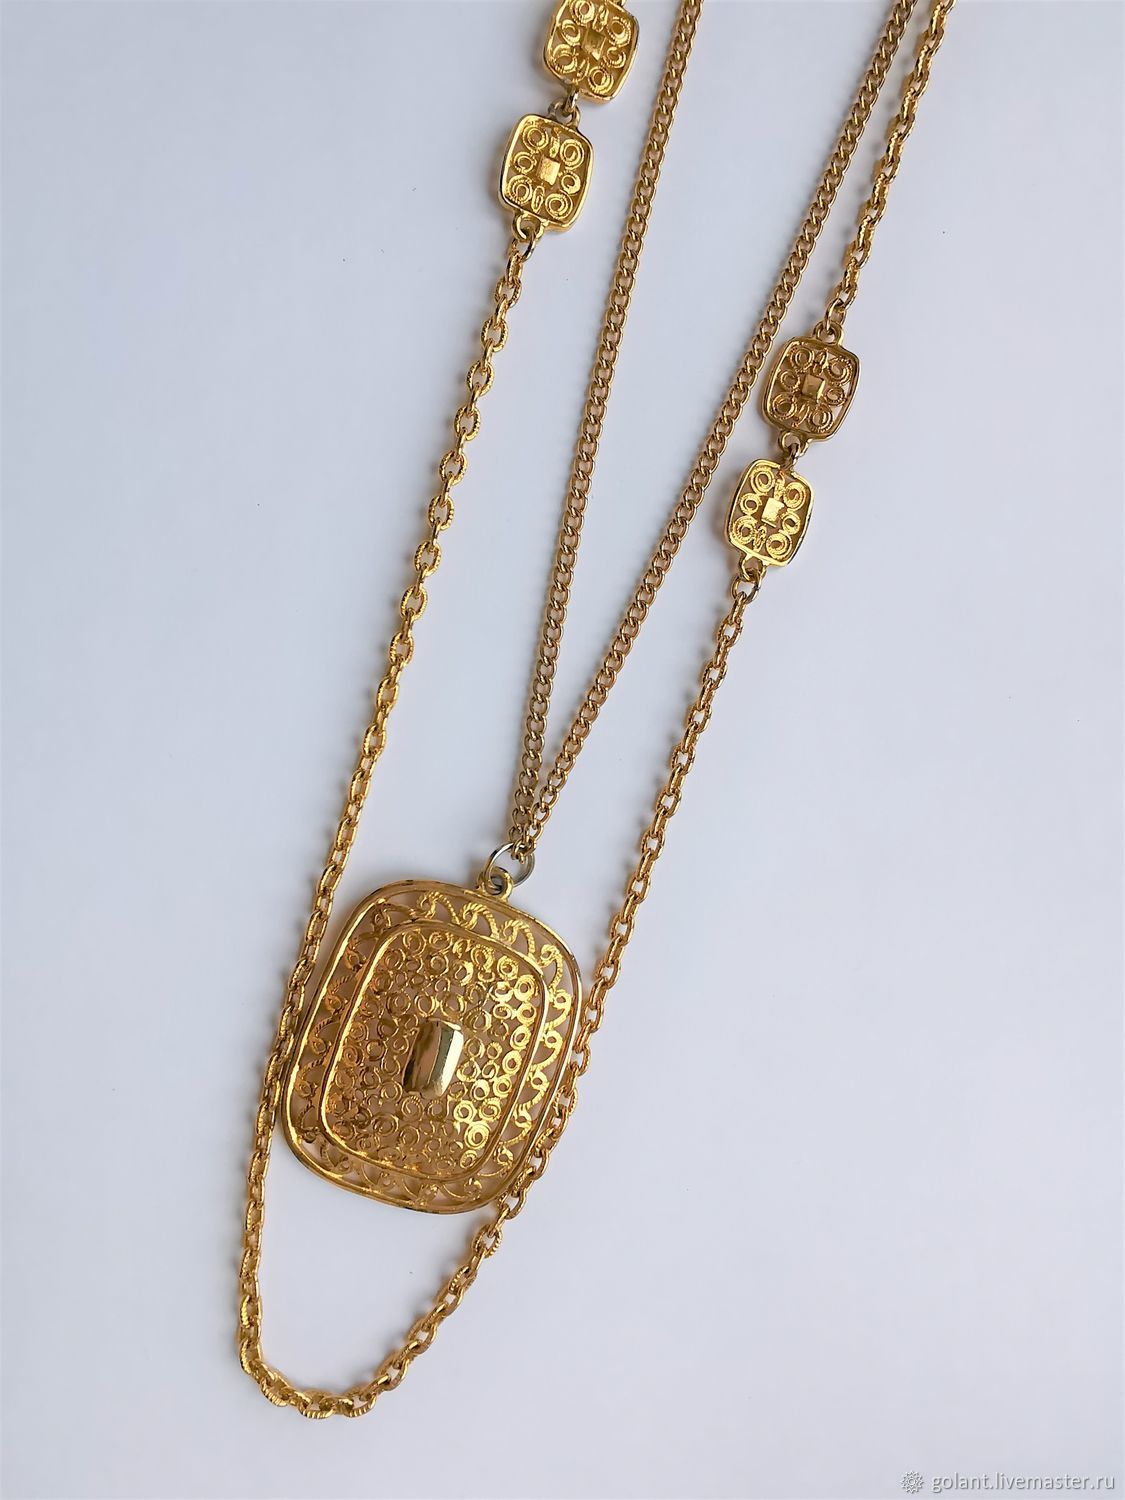 Vintage necklaces: Chain necklace, Vintage necklace, Kaliningrad,  Фото №1